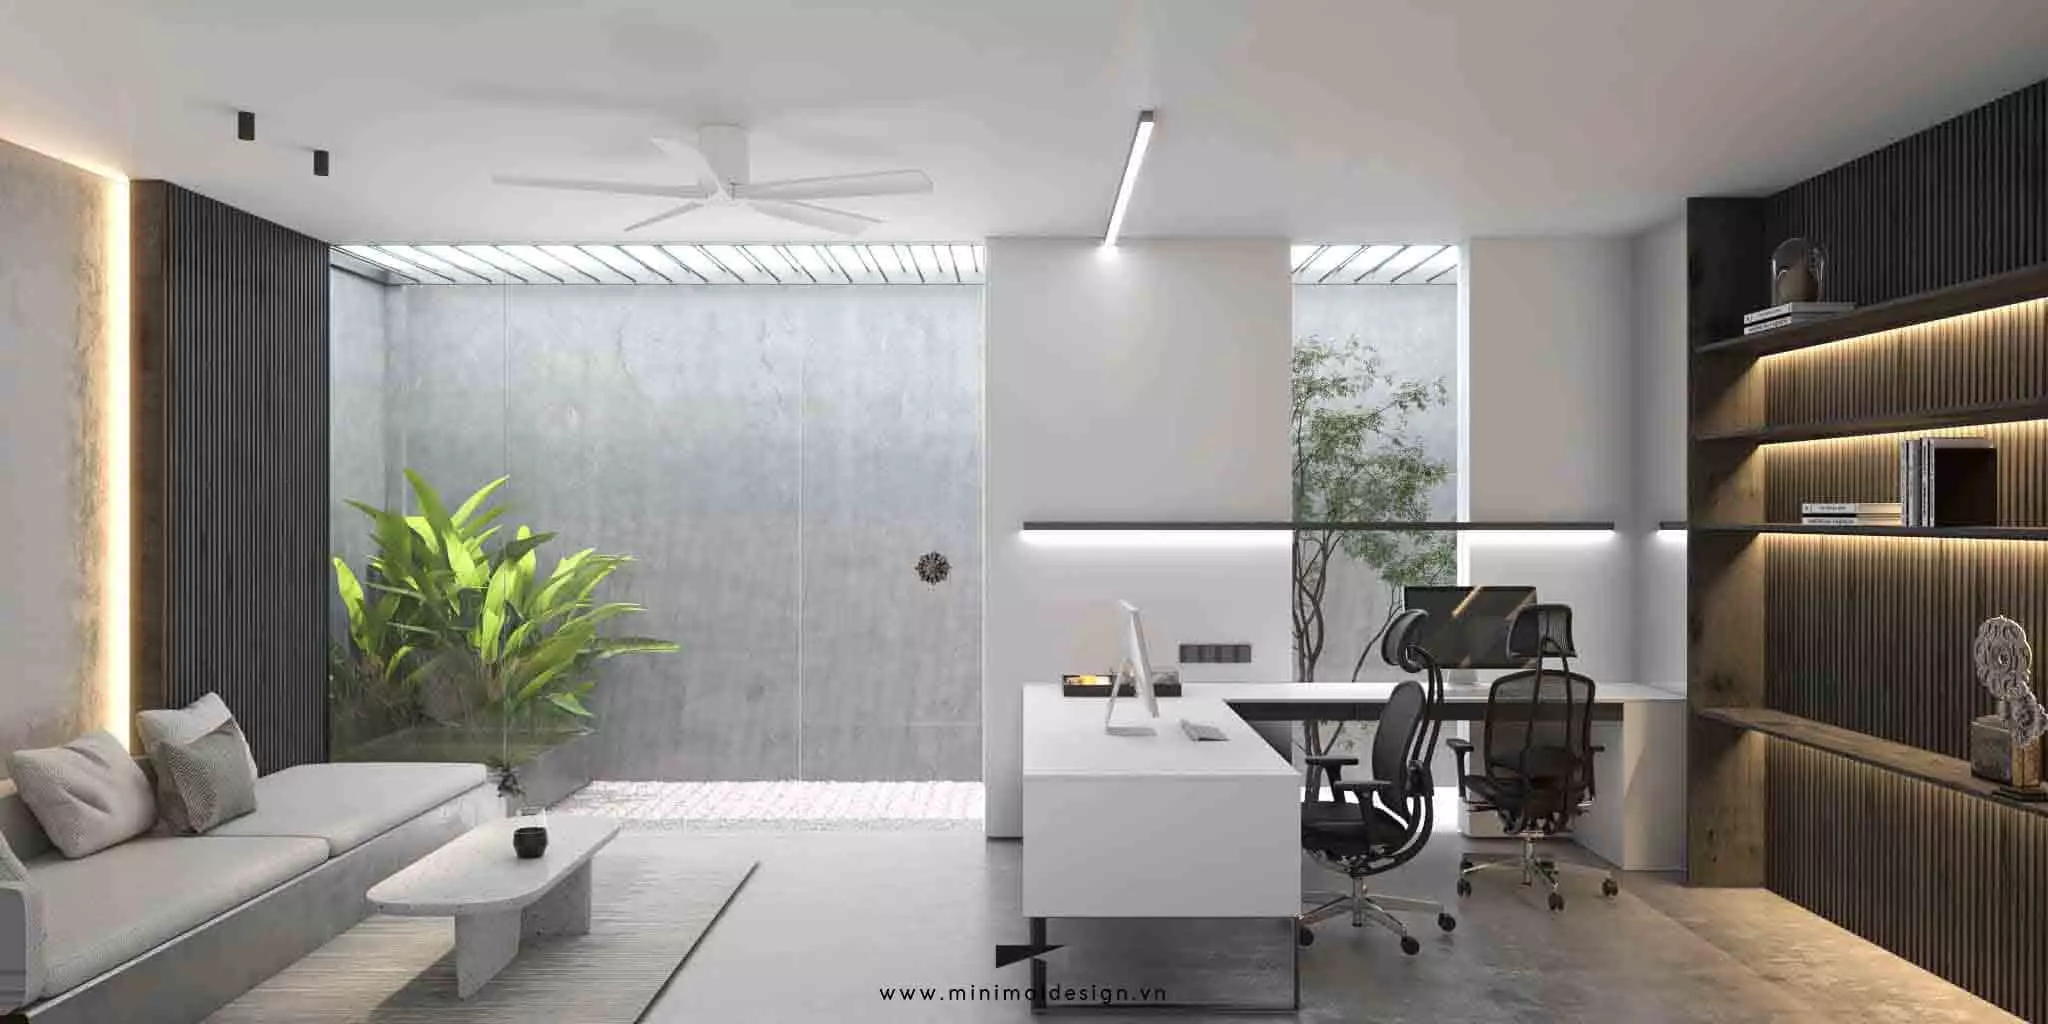 Phong cách thiết kế nội thất tối giản không còn xa lạ trong các loại hình từ nhà phố, căn hộ, biệt thự đến mô hình kinh doanh văn phòng